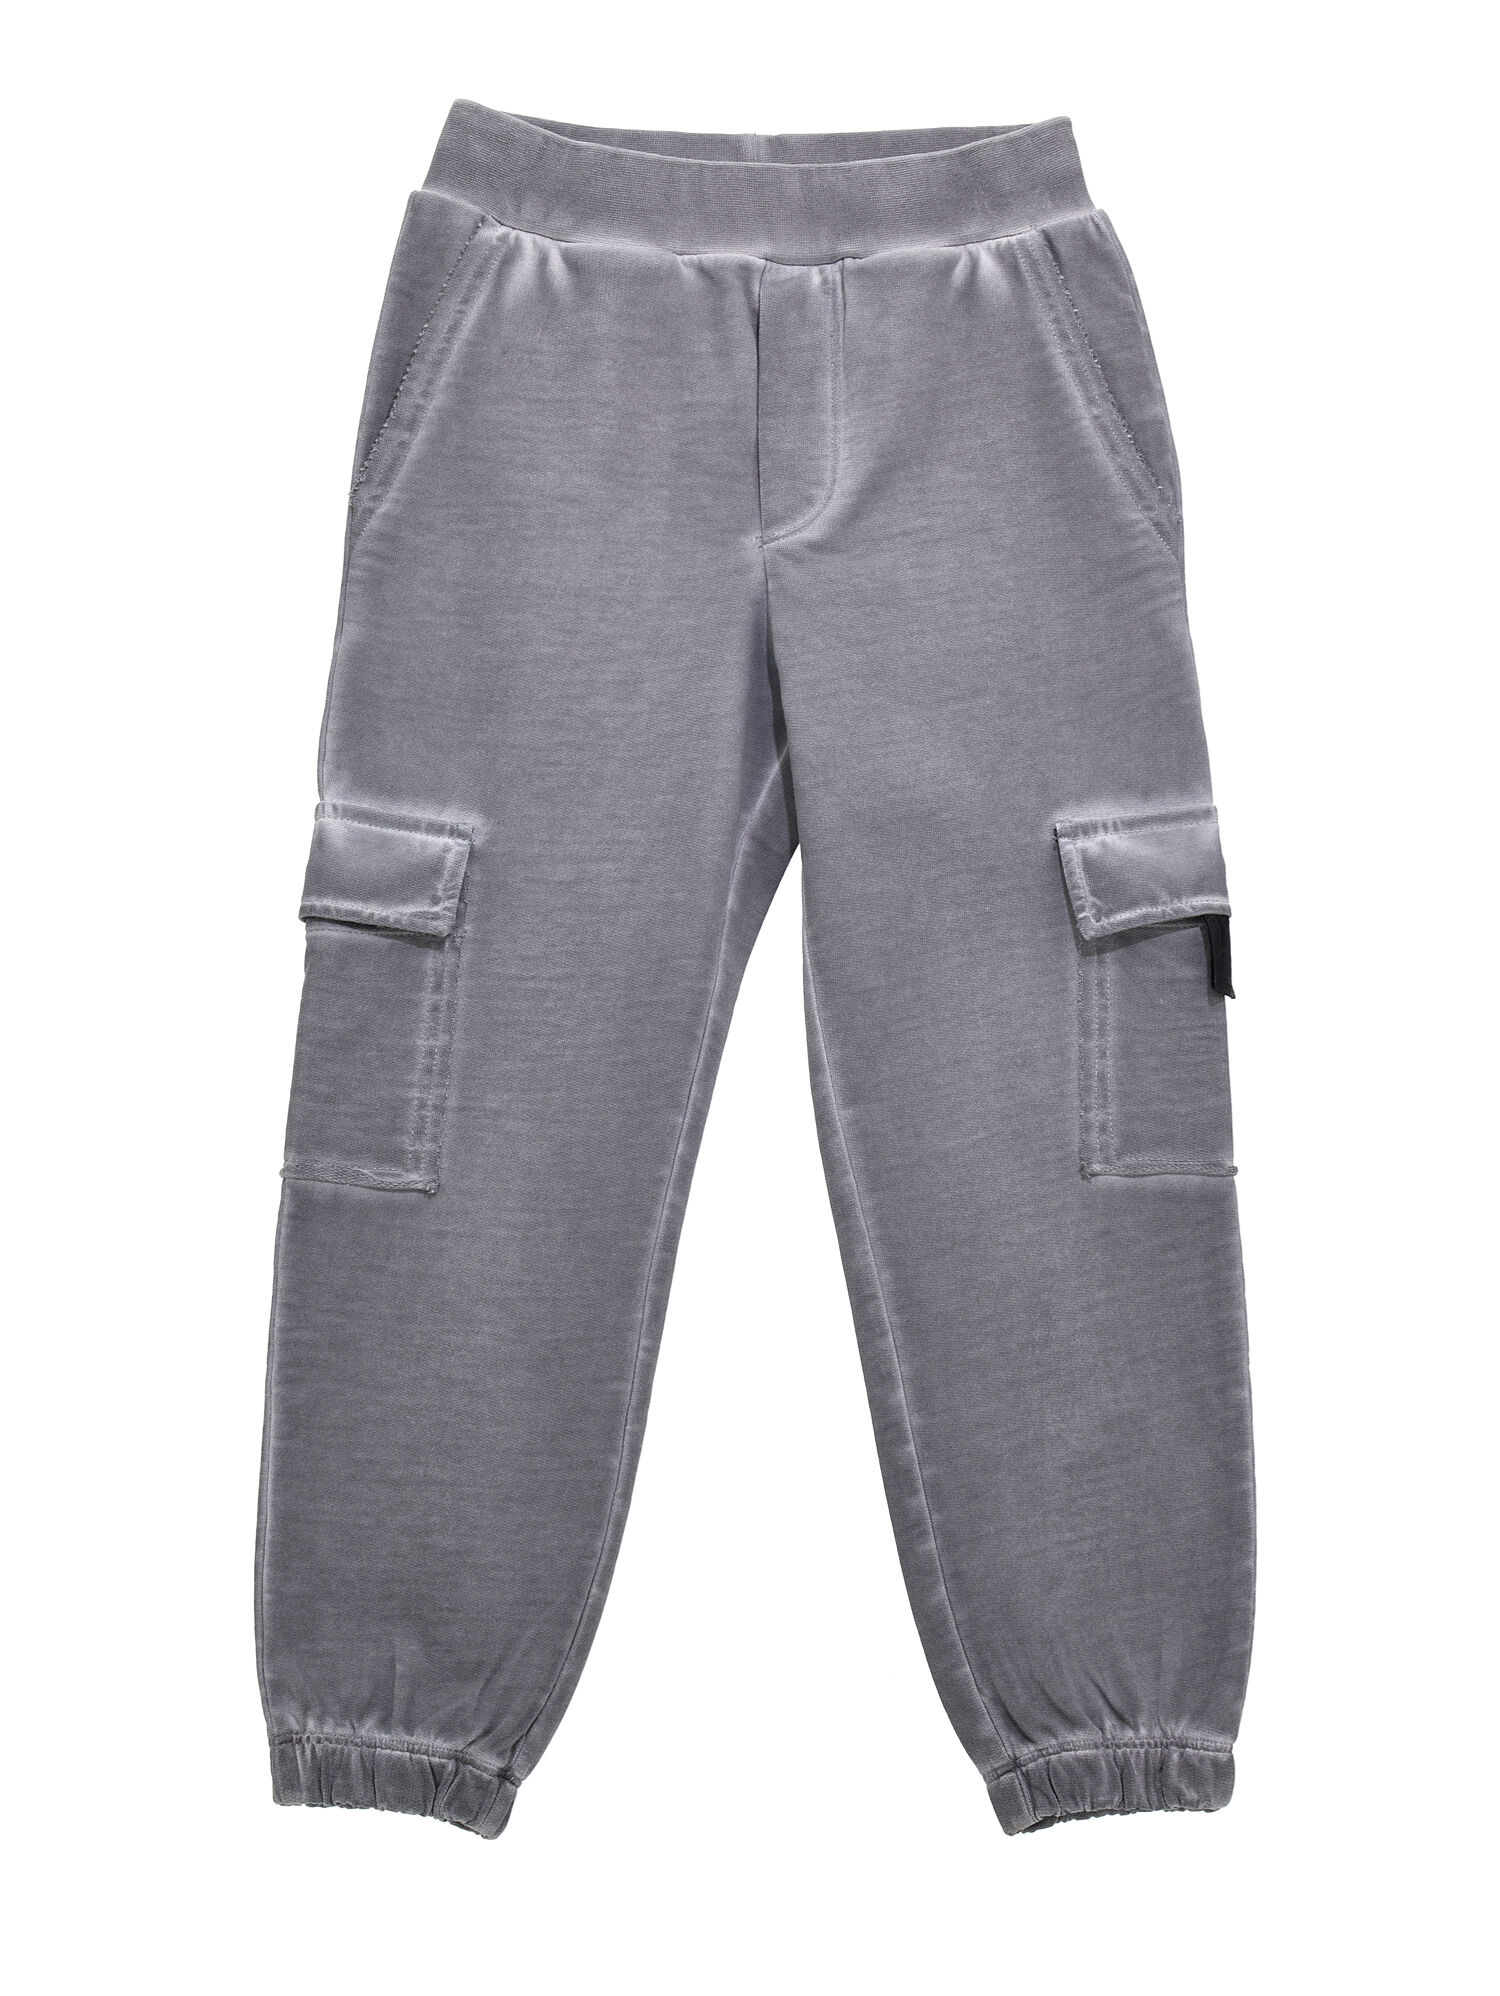 Vintage fleece joggers Monnalisa Boys Clothing Pants Sweatpants 